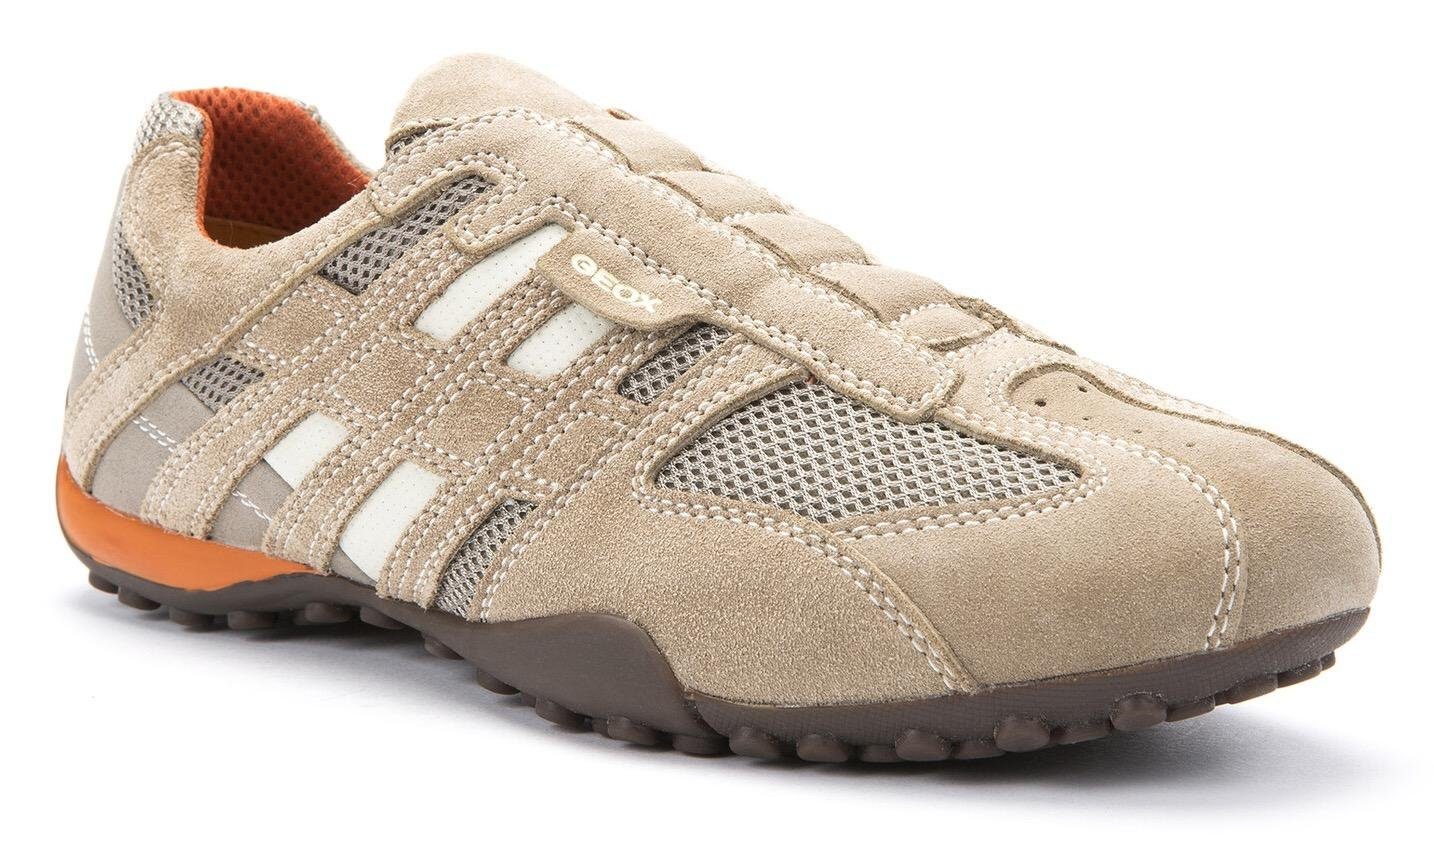 Geox UOMO SNAKE Sneaker mit Membrane mit Ziernähten Slip-On und beige-orange Geox Spezial modischen